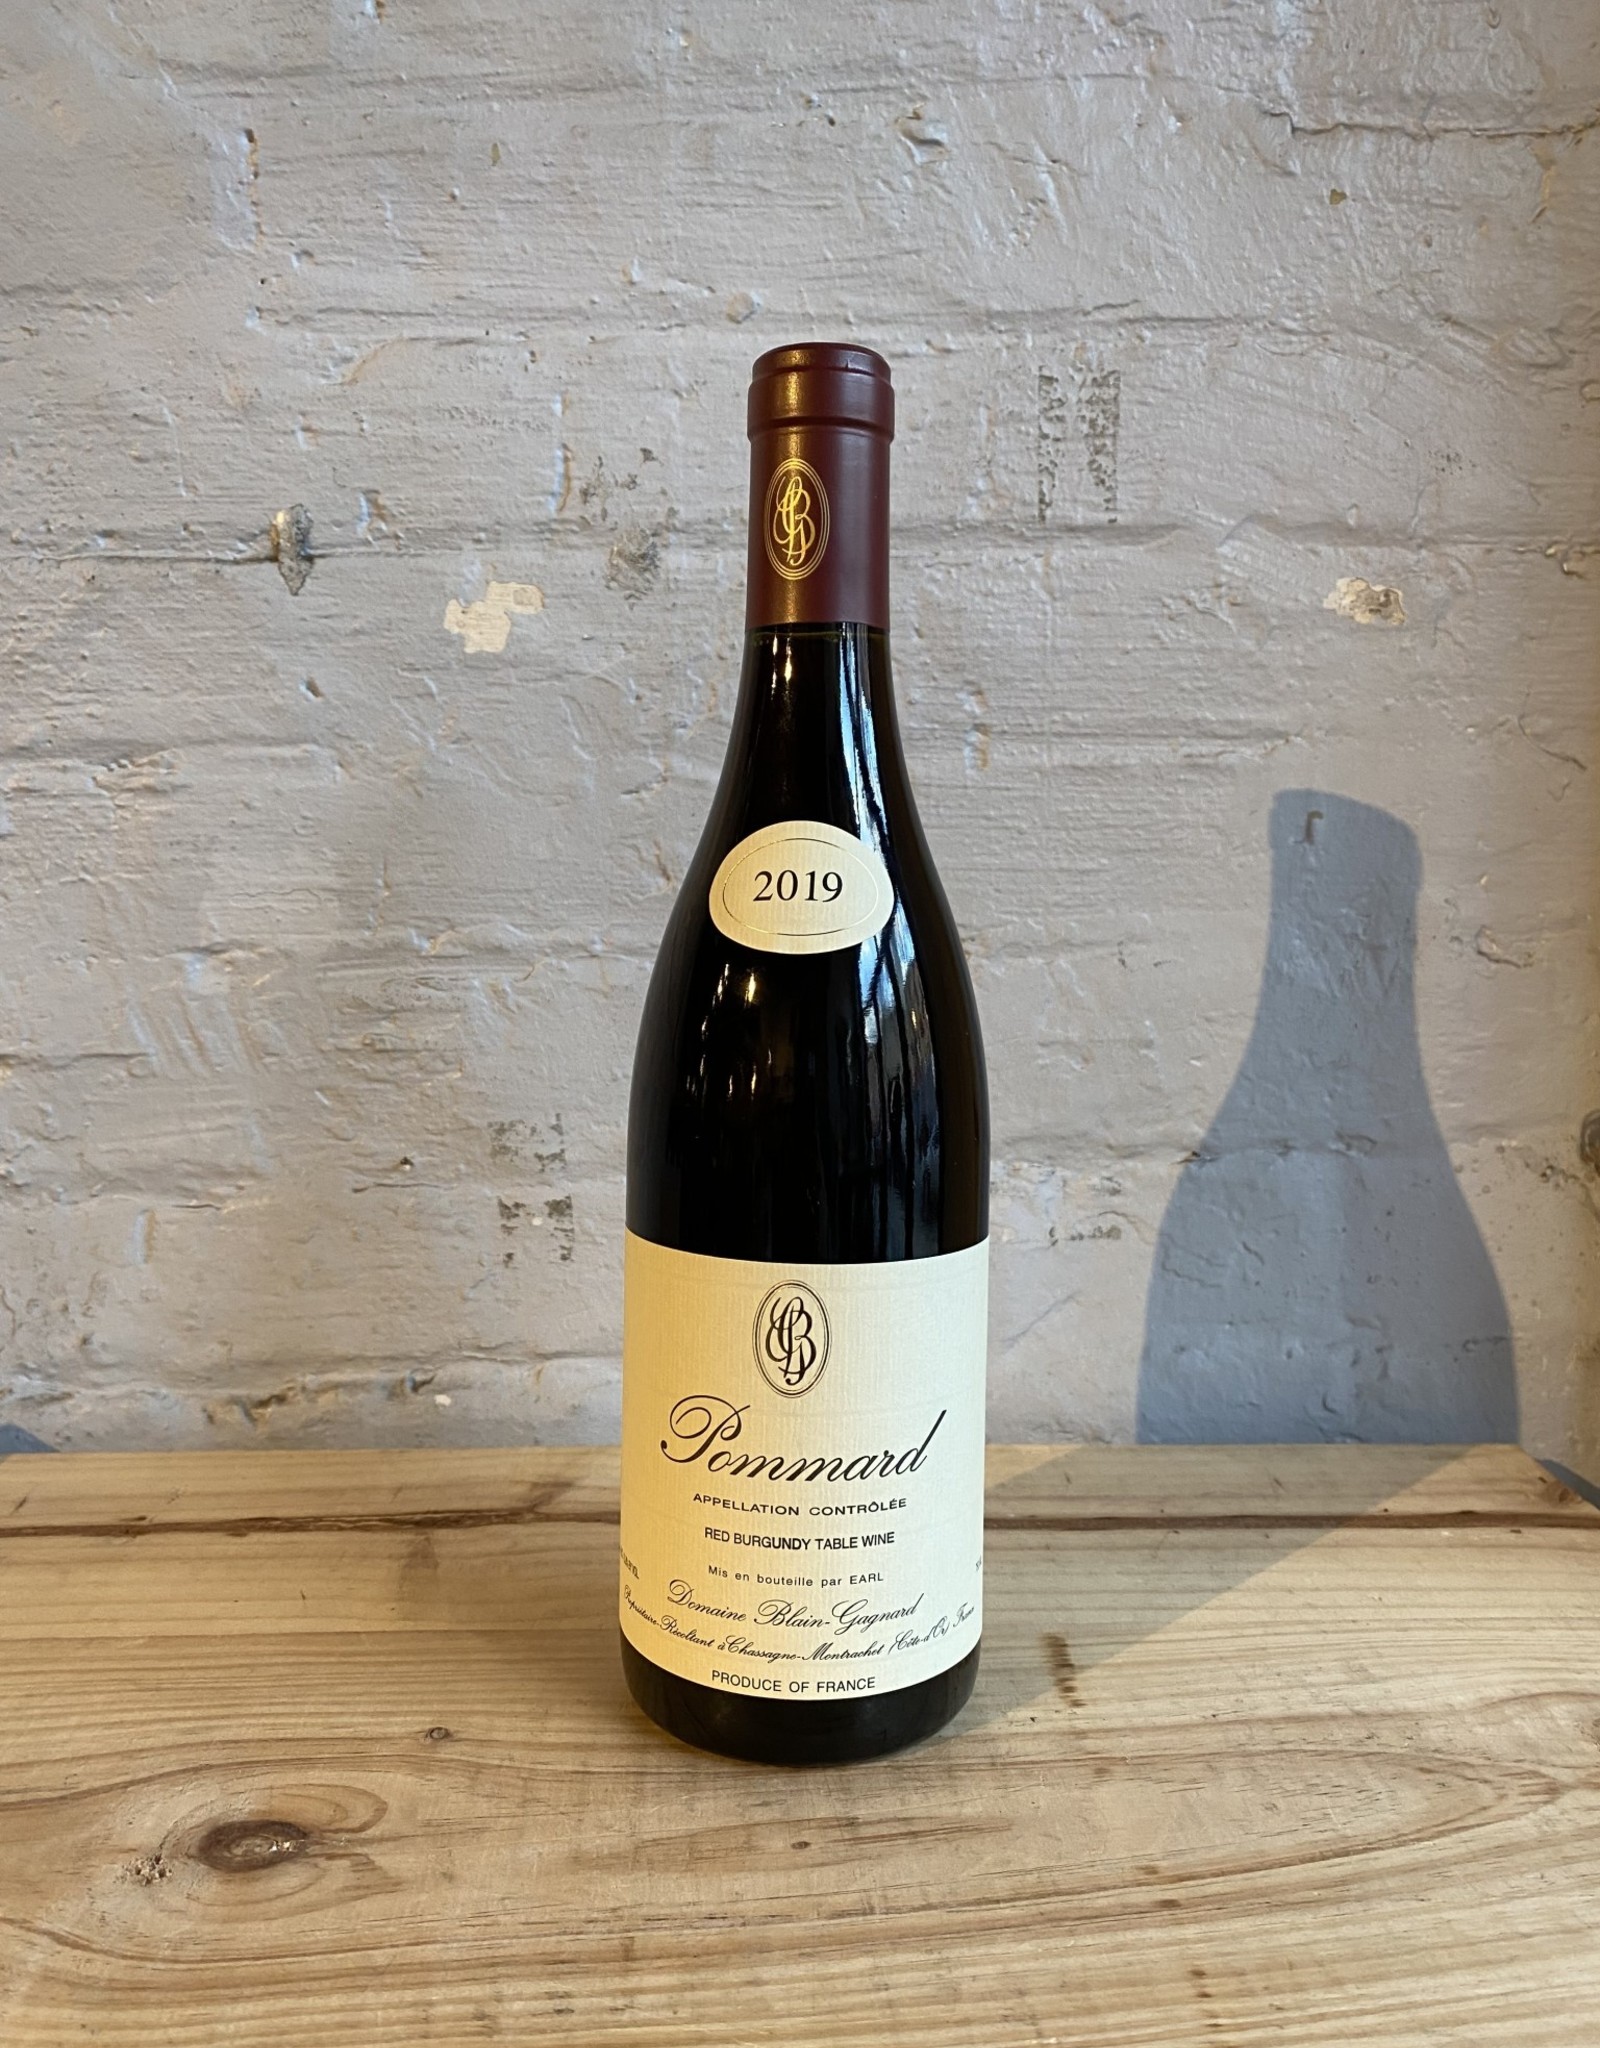 Wine 2019 Domaine Blain-Gagnard Pommard - Burgundy, France (750ml)